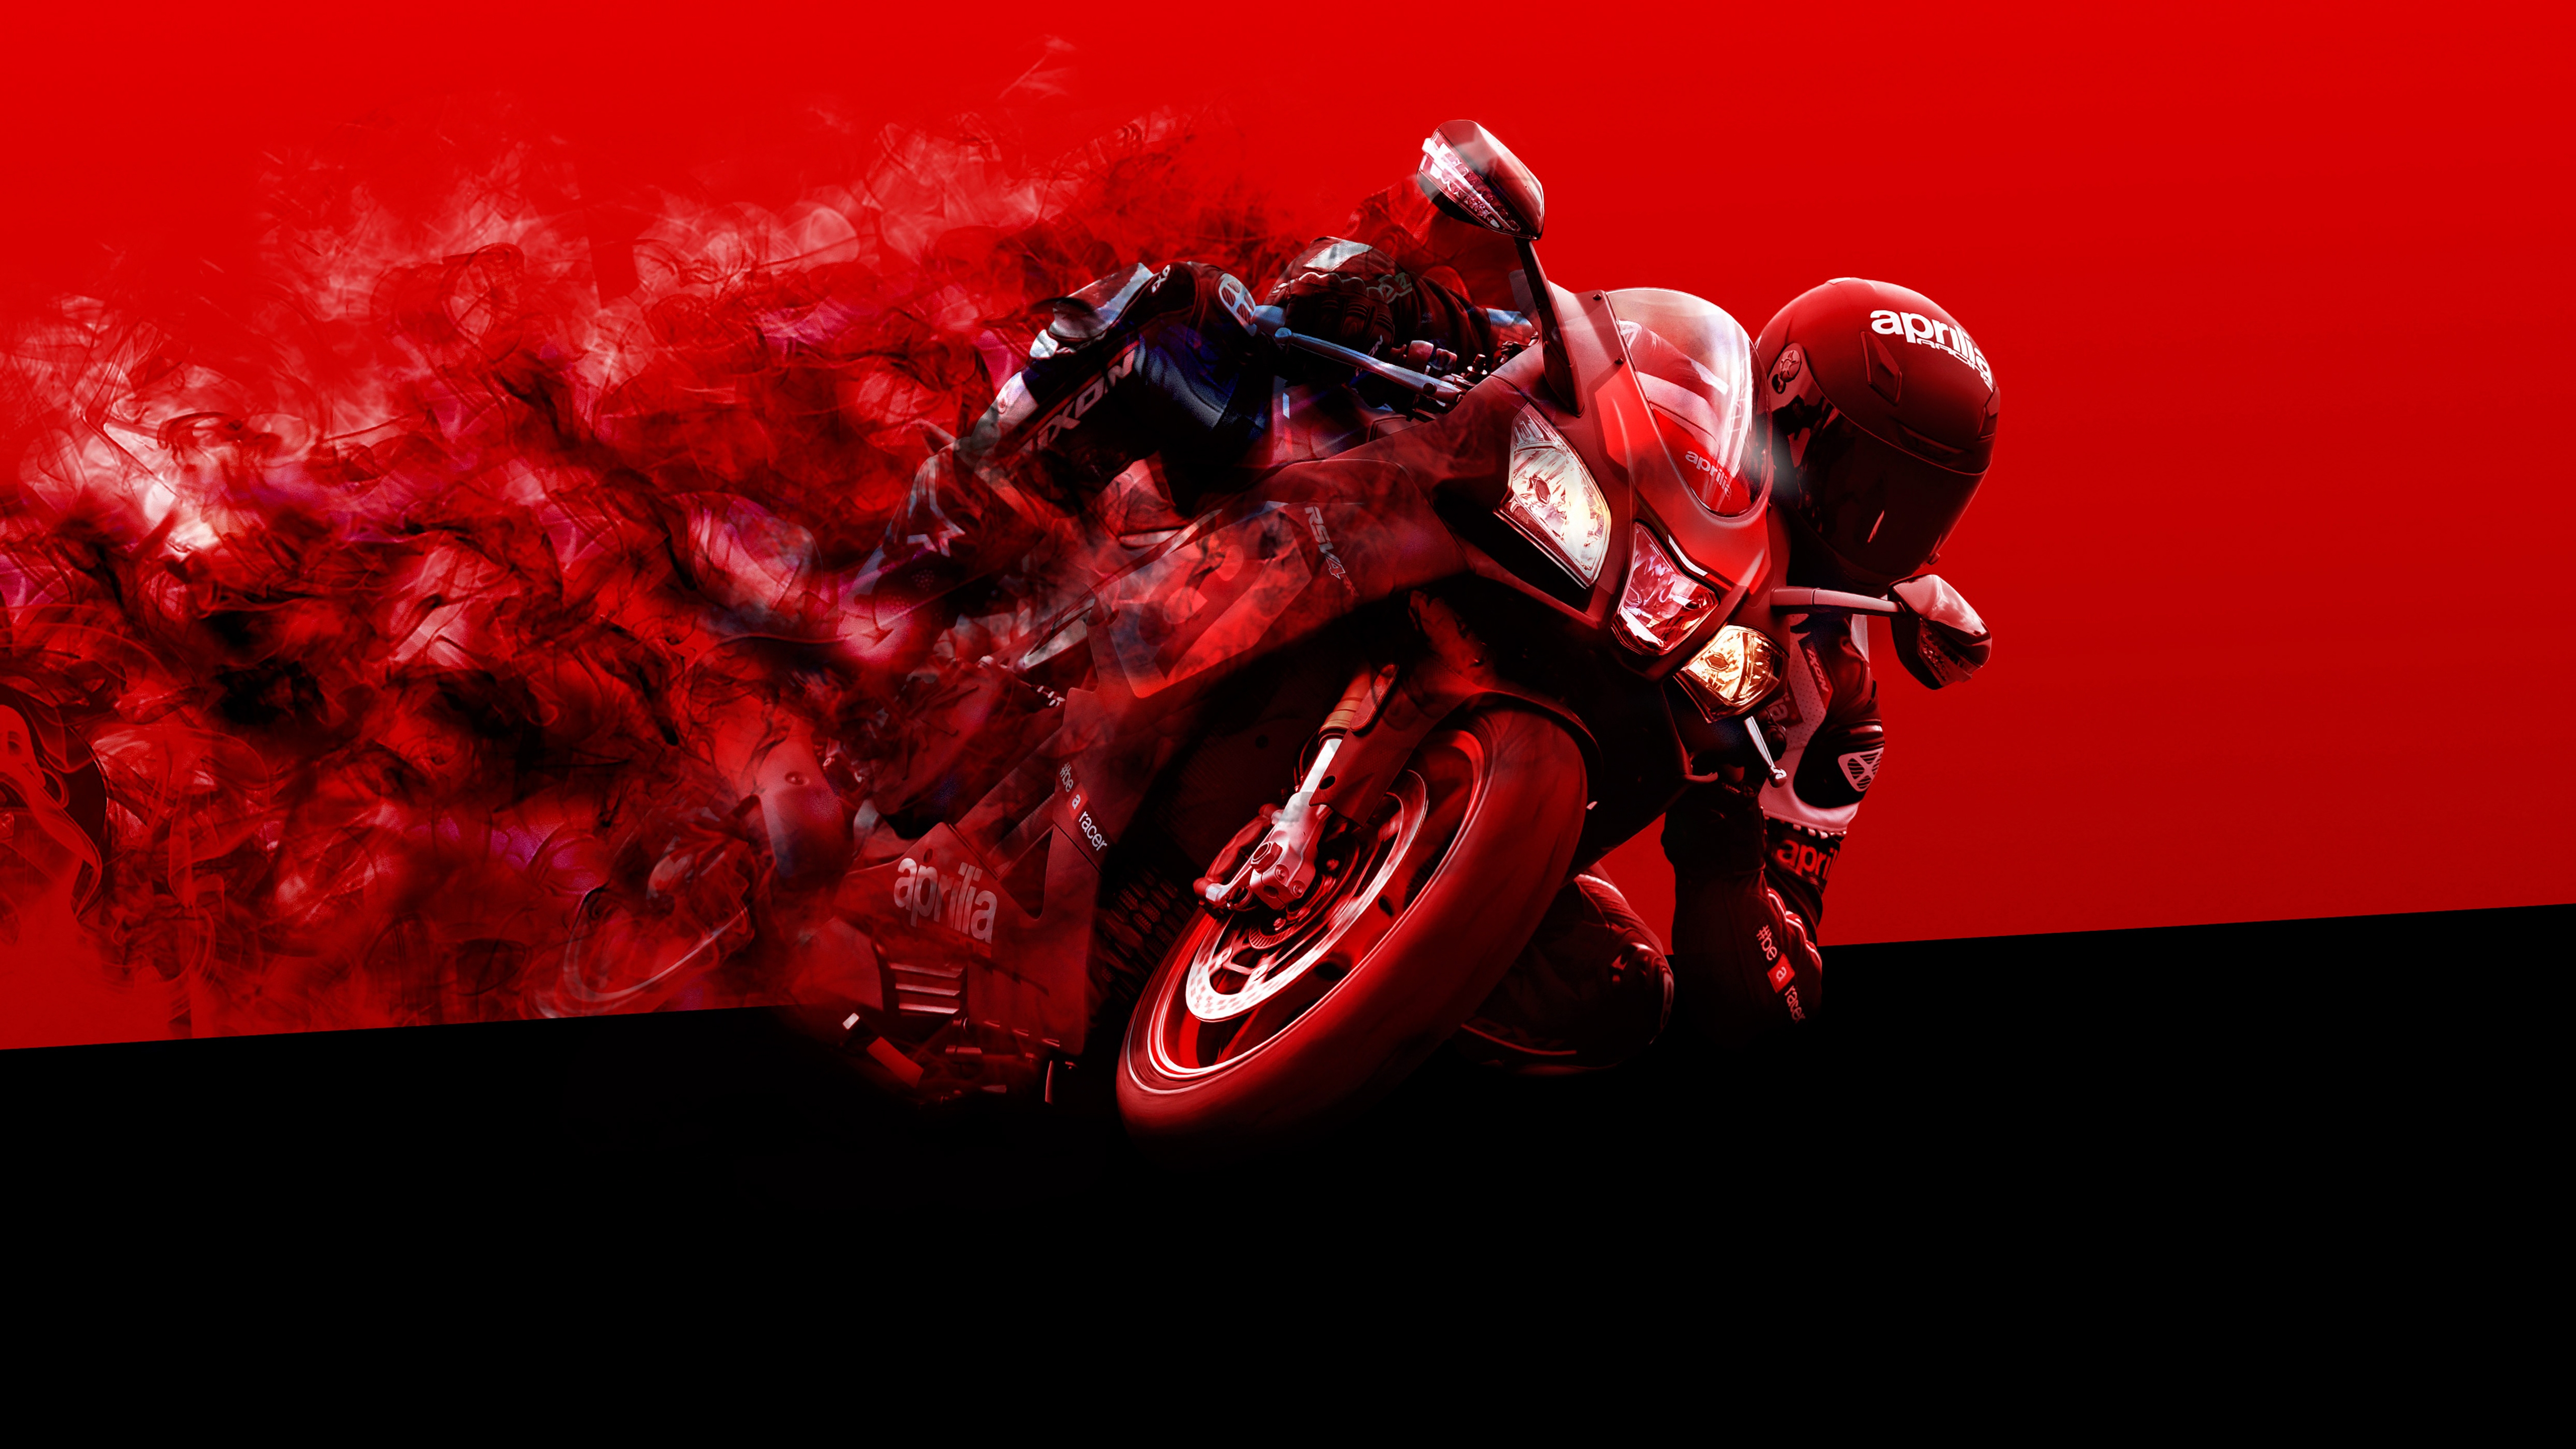 Wallpapers wallpaper aprilia racer rendering racing motorcycle on the desktop